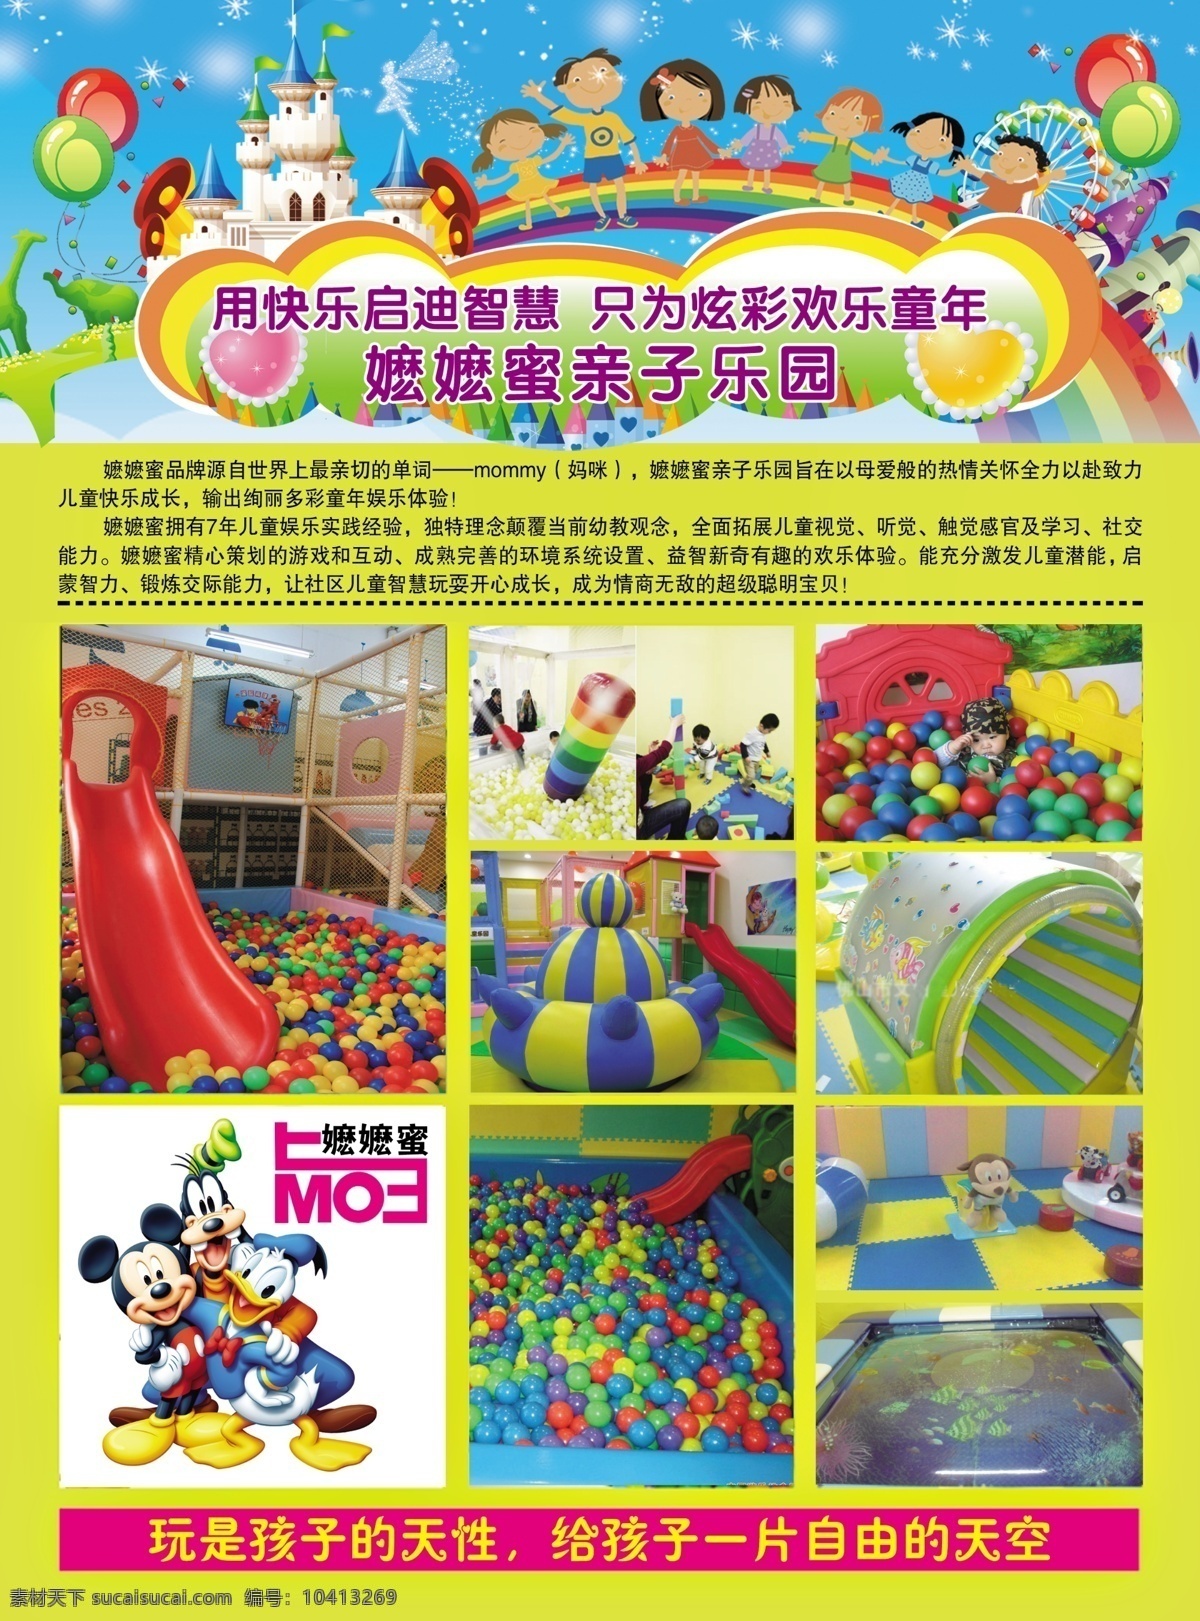 dm宣传单 儿童乐园 广告设计模板 健康 玩具 休闲 娱乐 源文件 模板下载 节假日消费 psd源文件